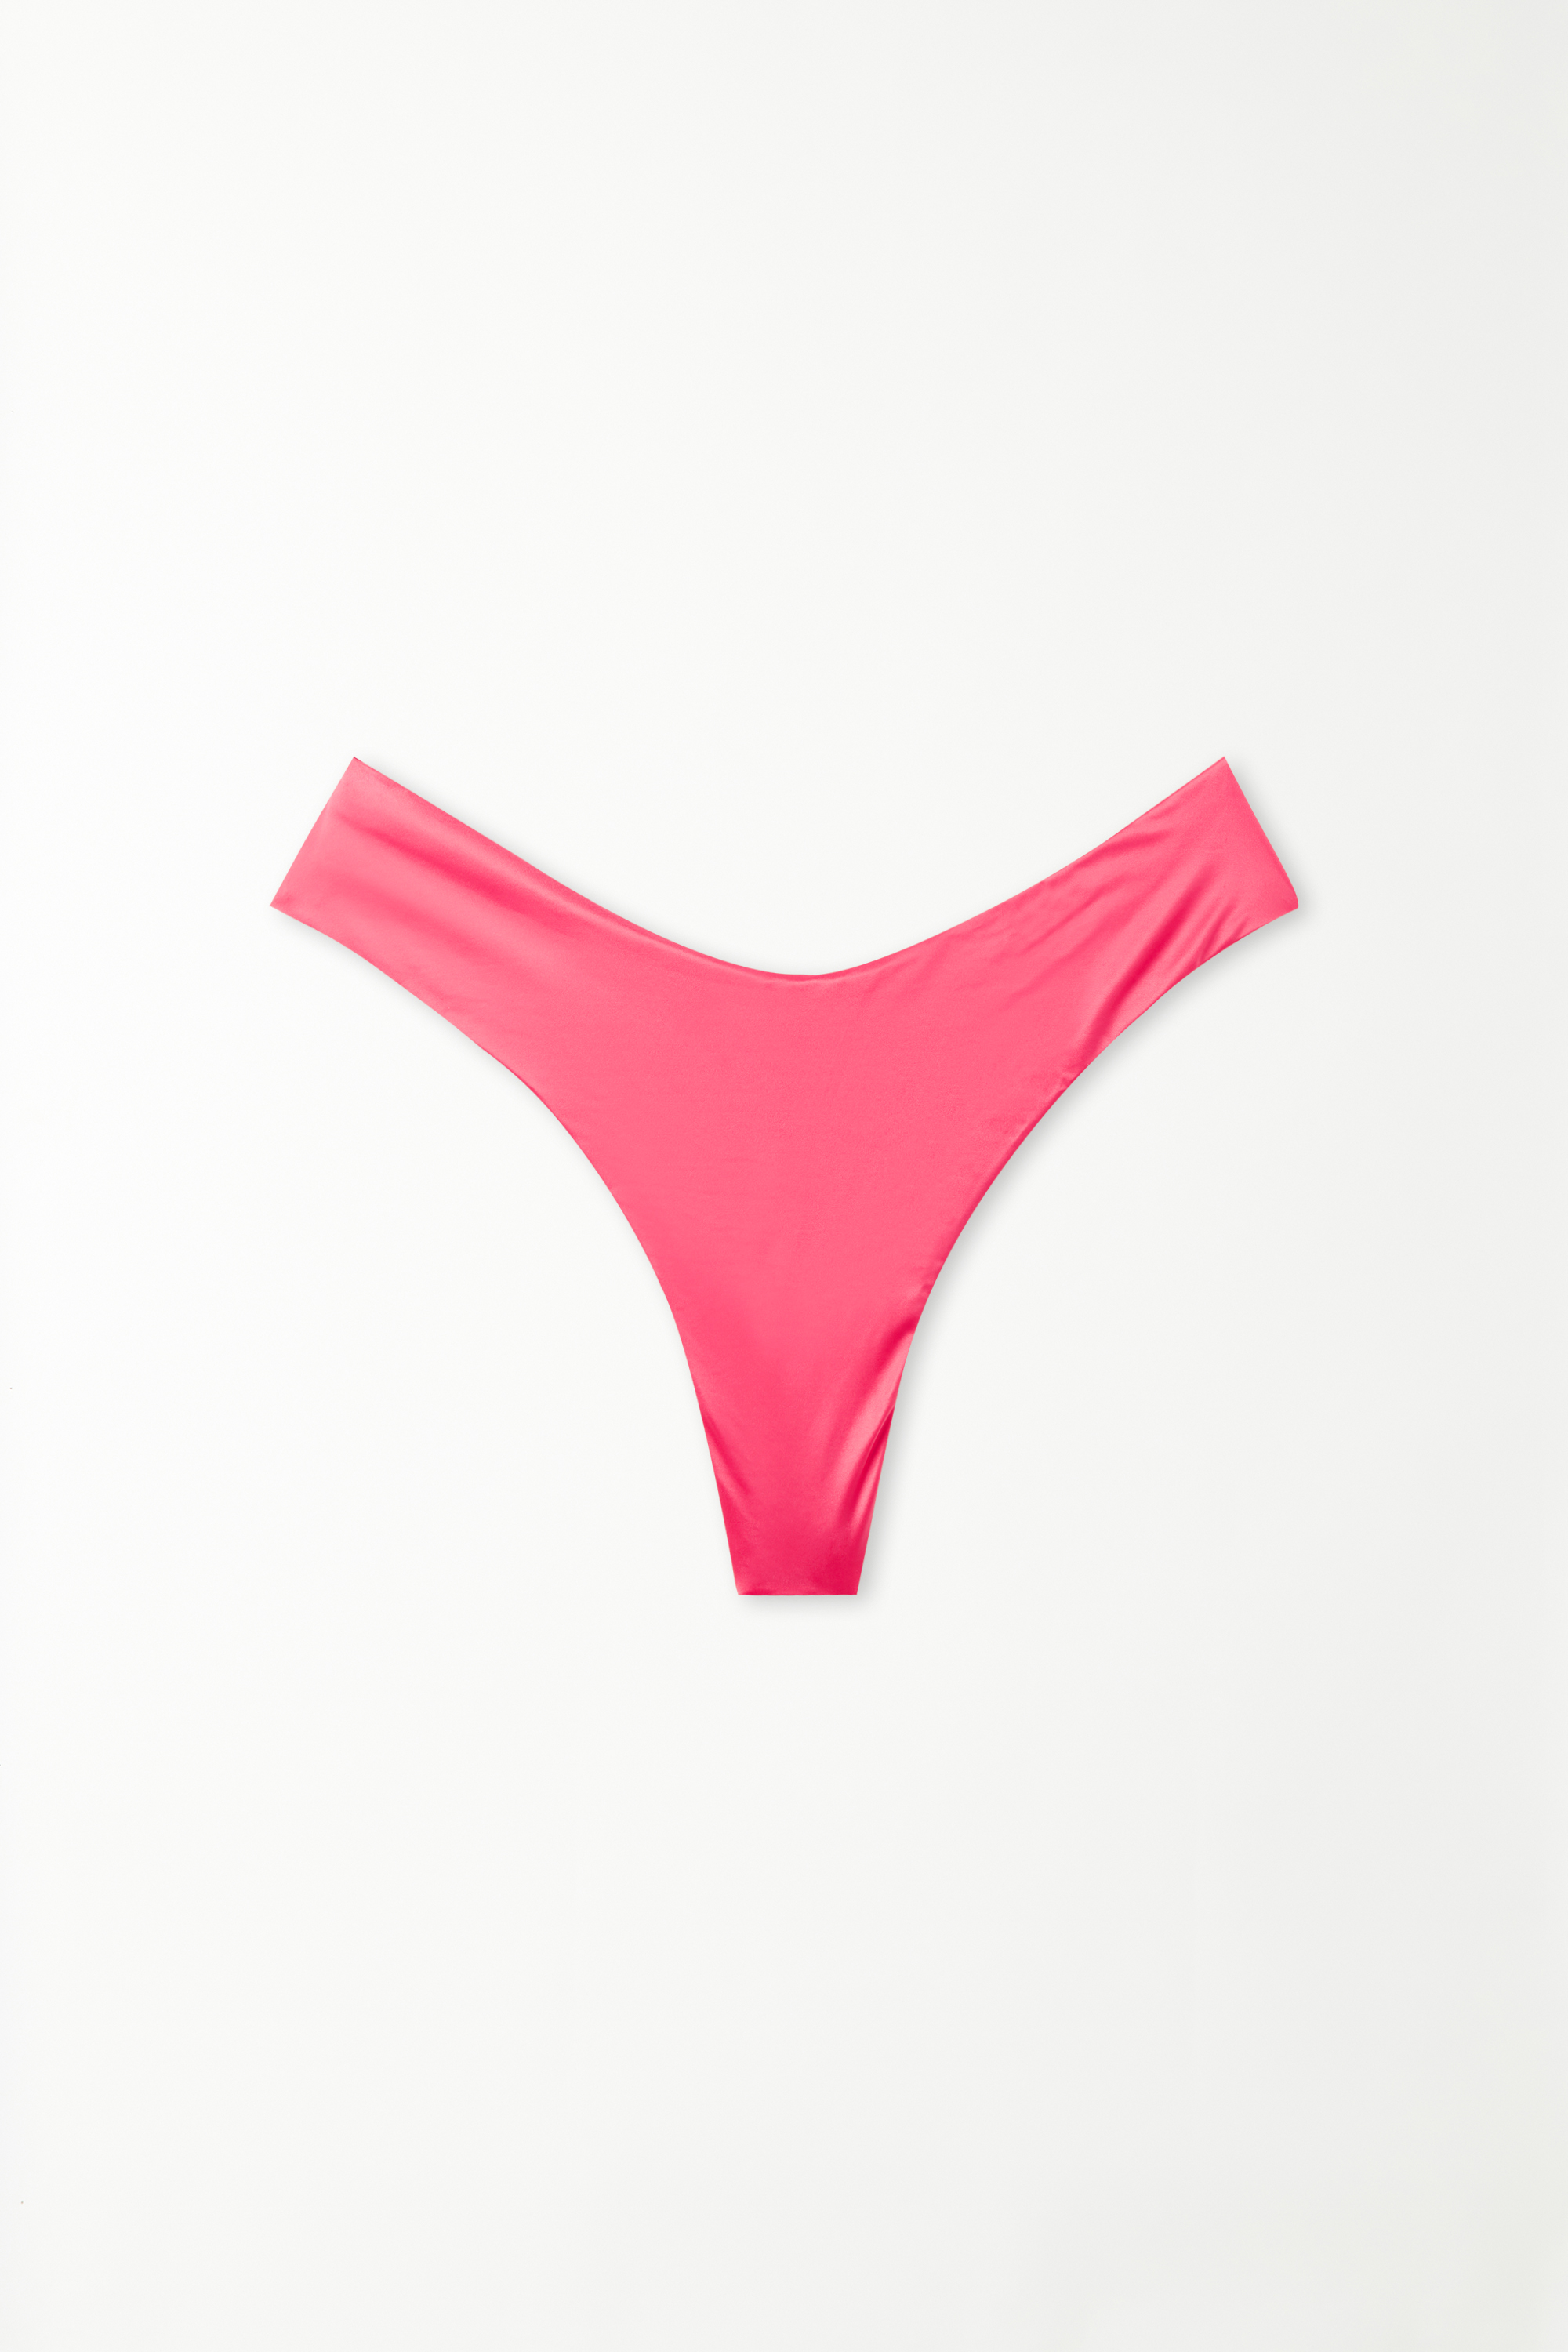 Sommerlich rosafarbener Brazilian-Bikinislip mit hohem, abgerundetem Beinausschnitt Shiny